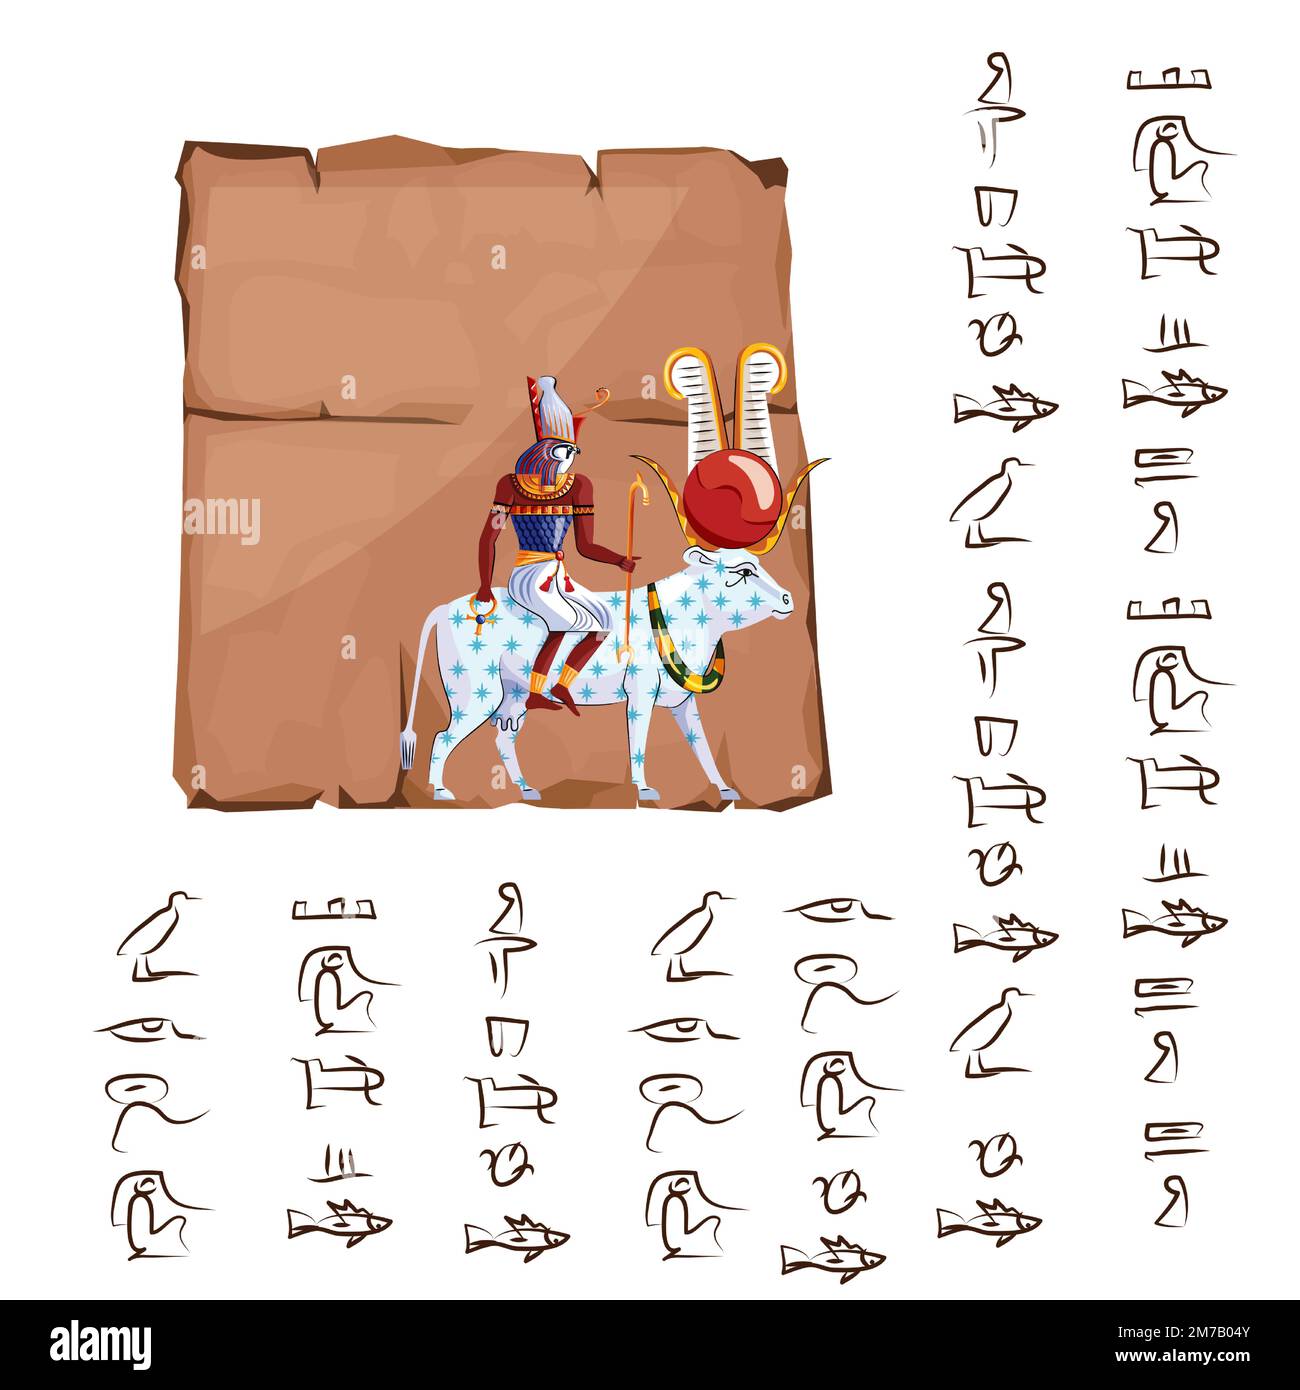 Das antike ägyptische Papyrus oder der Steincartoon-Vektor mit Hieroglyphen und religiösen Symbolen der ägyptischen Kultur, Ra sitzt auf einer weißen, mit Sternen bedeckten Kuh zurück, Ra geht zum Himmel, Legende Stock Vektor